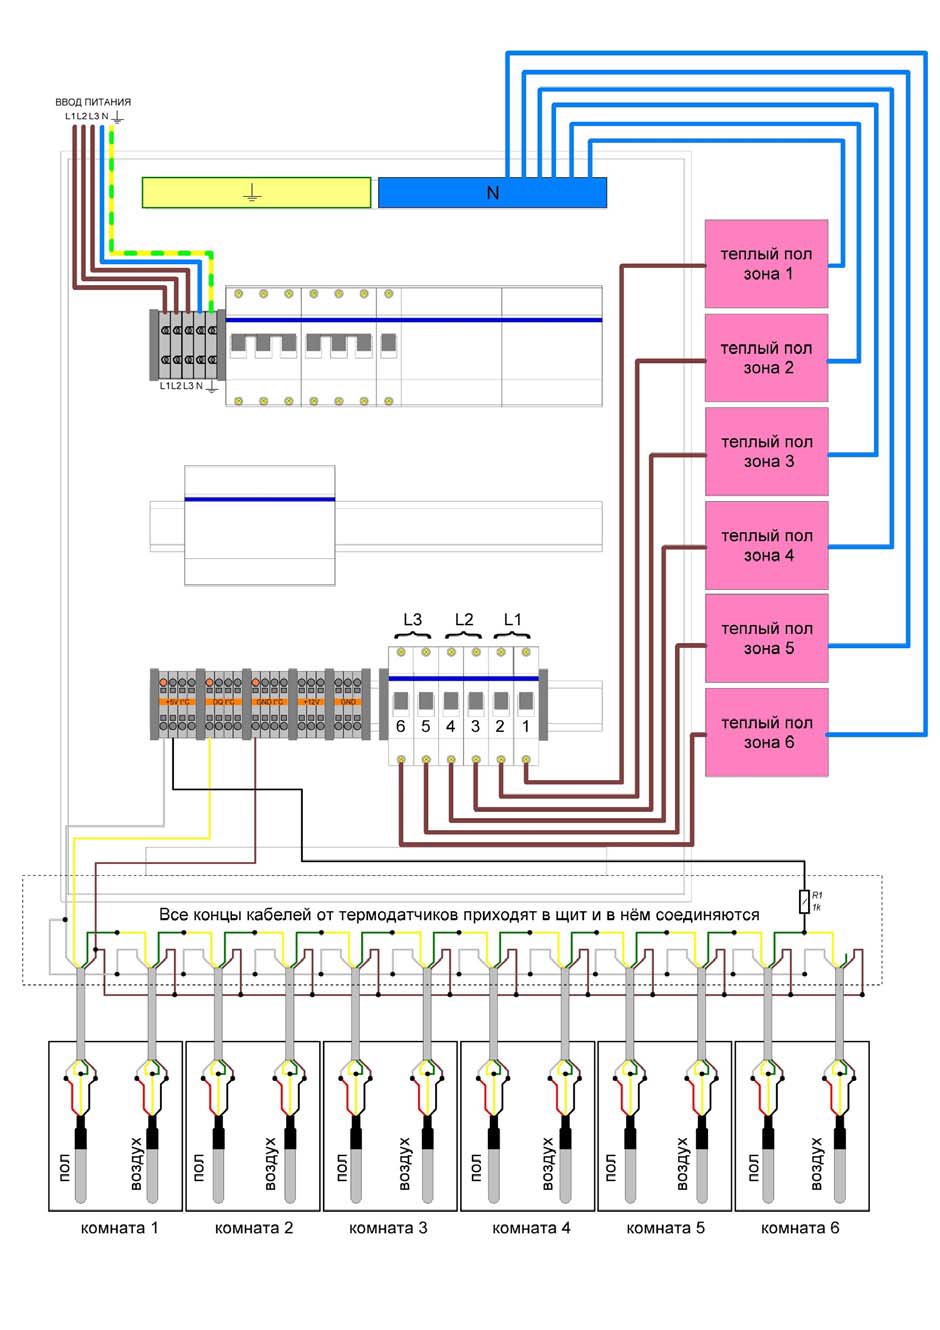 Пример подключения управления теплым полом 6 зон - BM8035 - Комплект модулей для постройки системы Умный Дом на базе Orange PI One